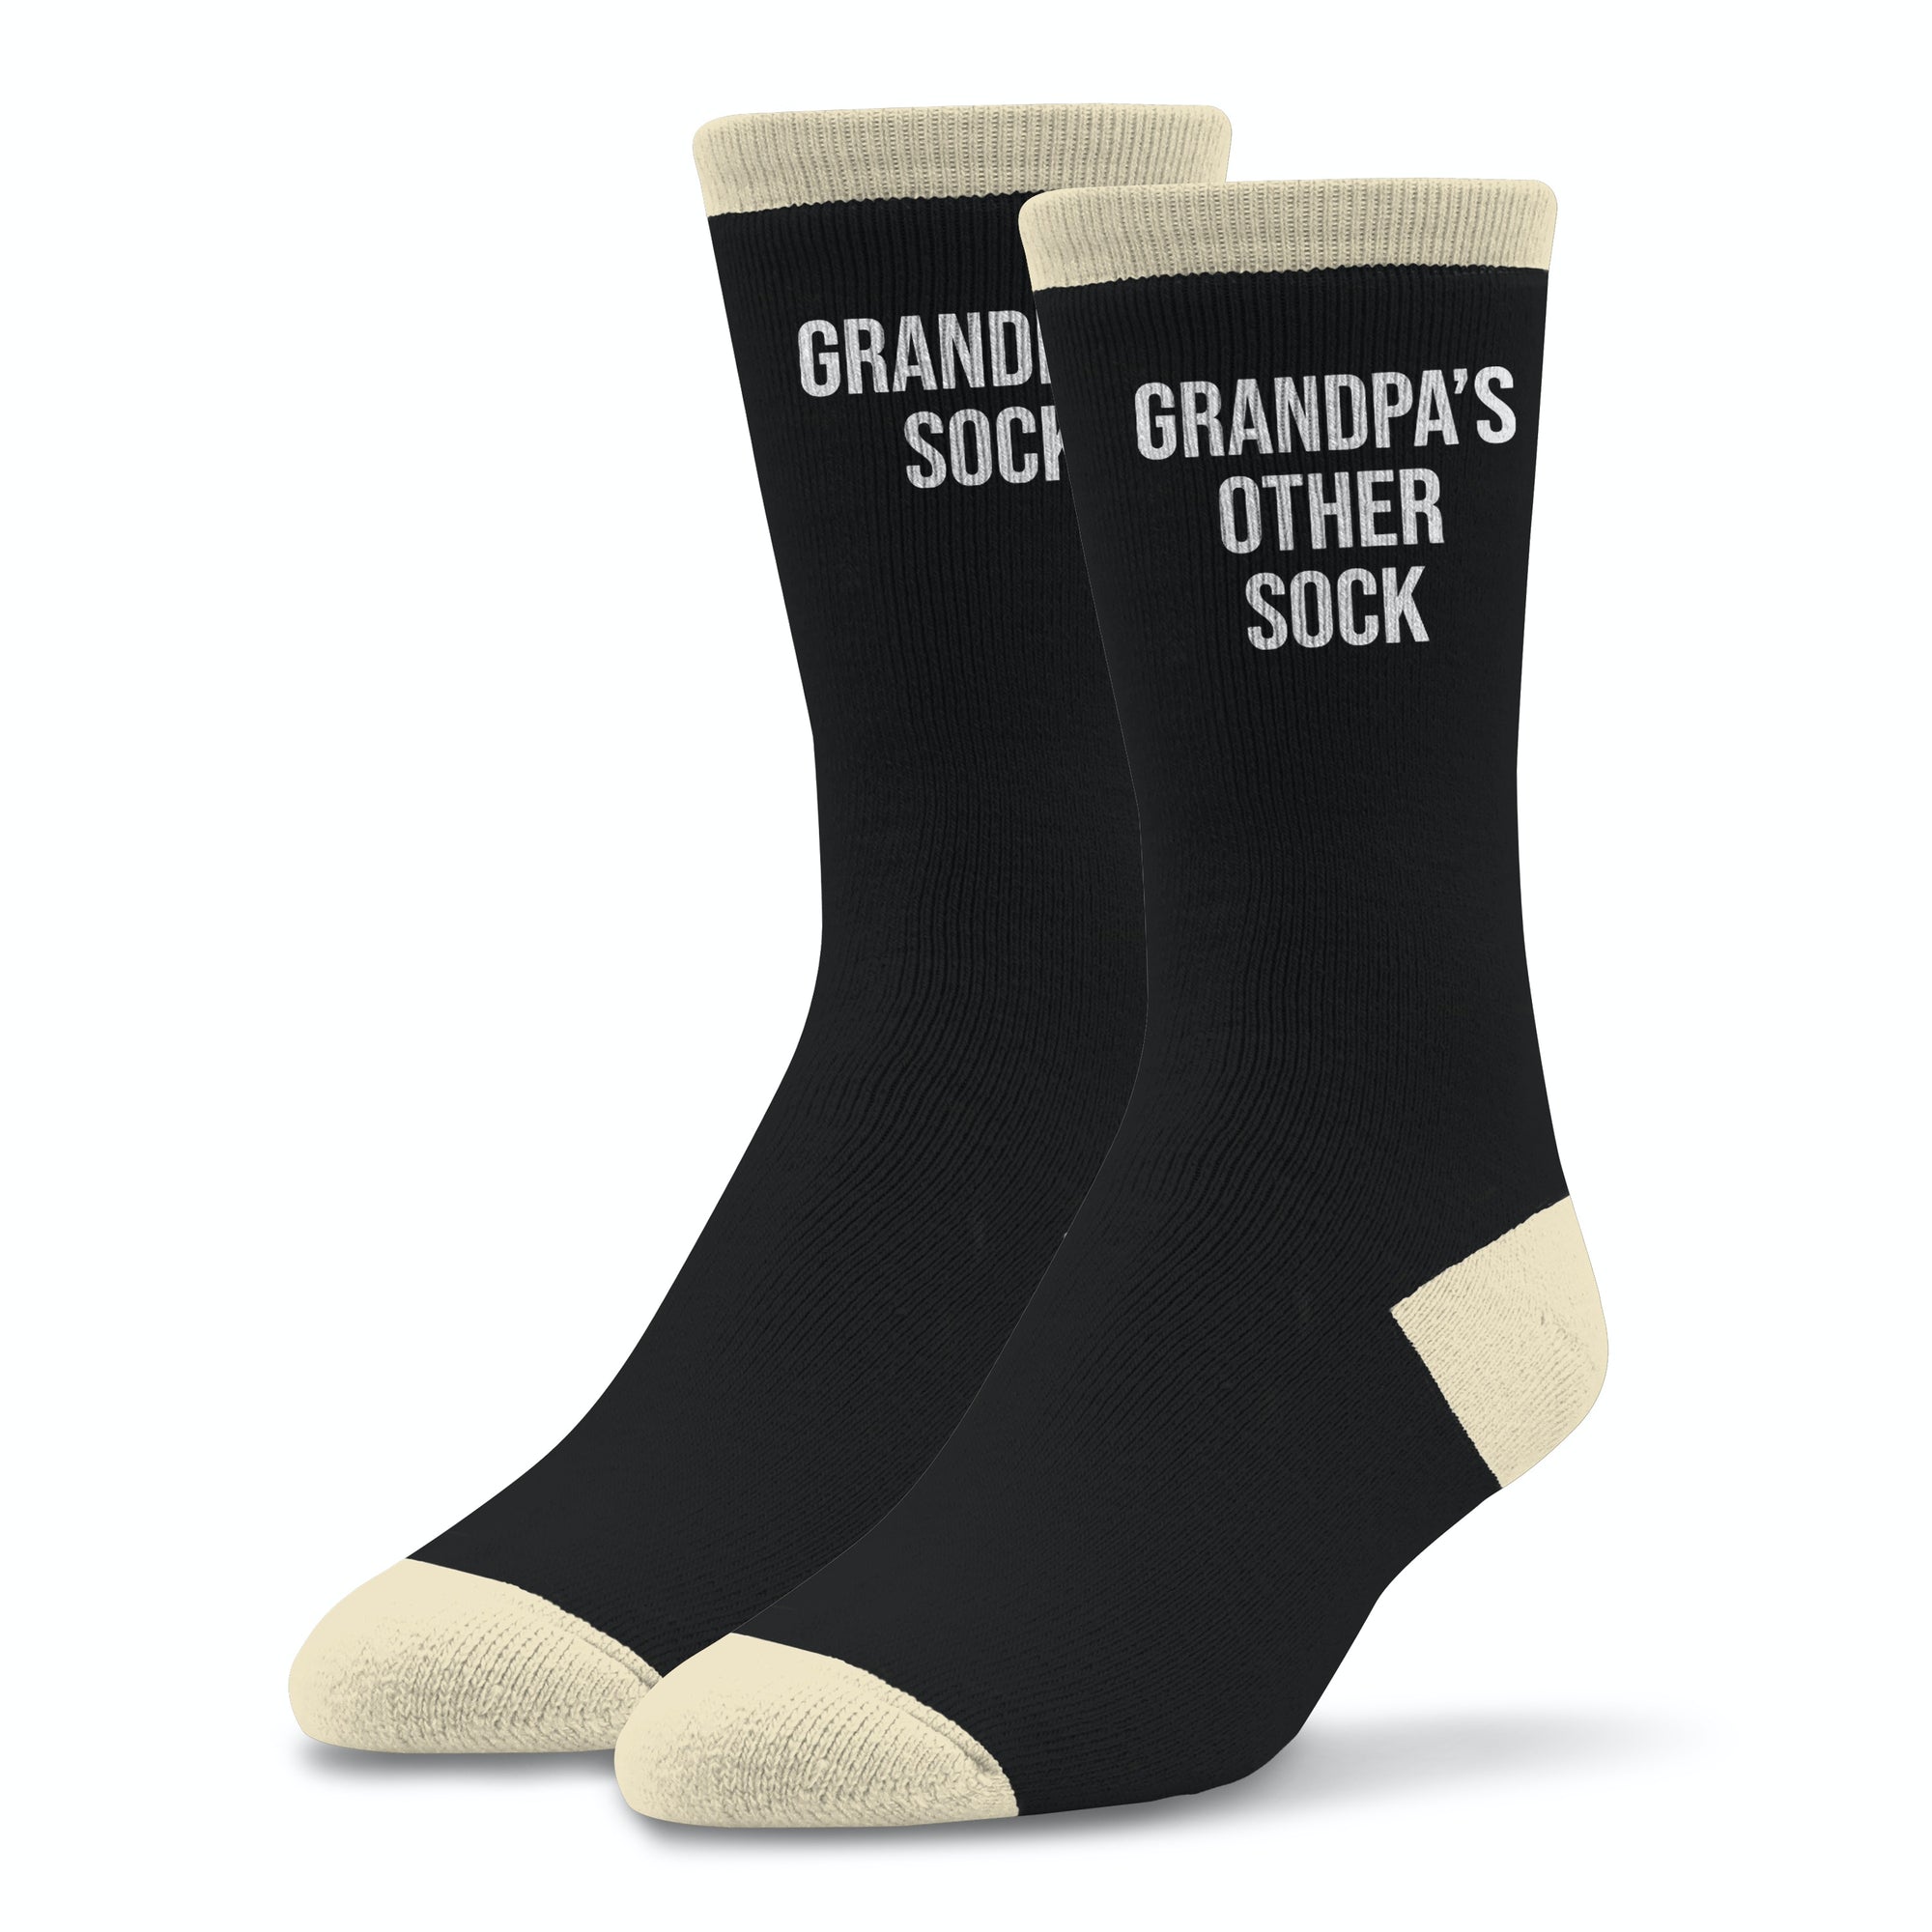 Grandpa's Socks - Black